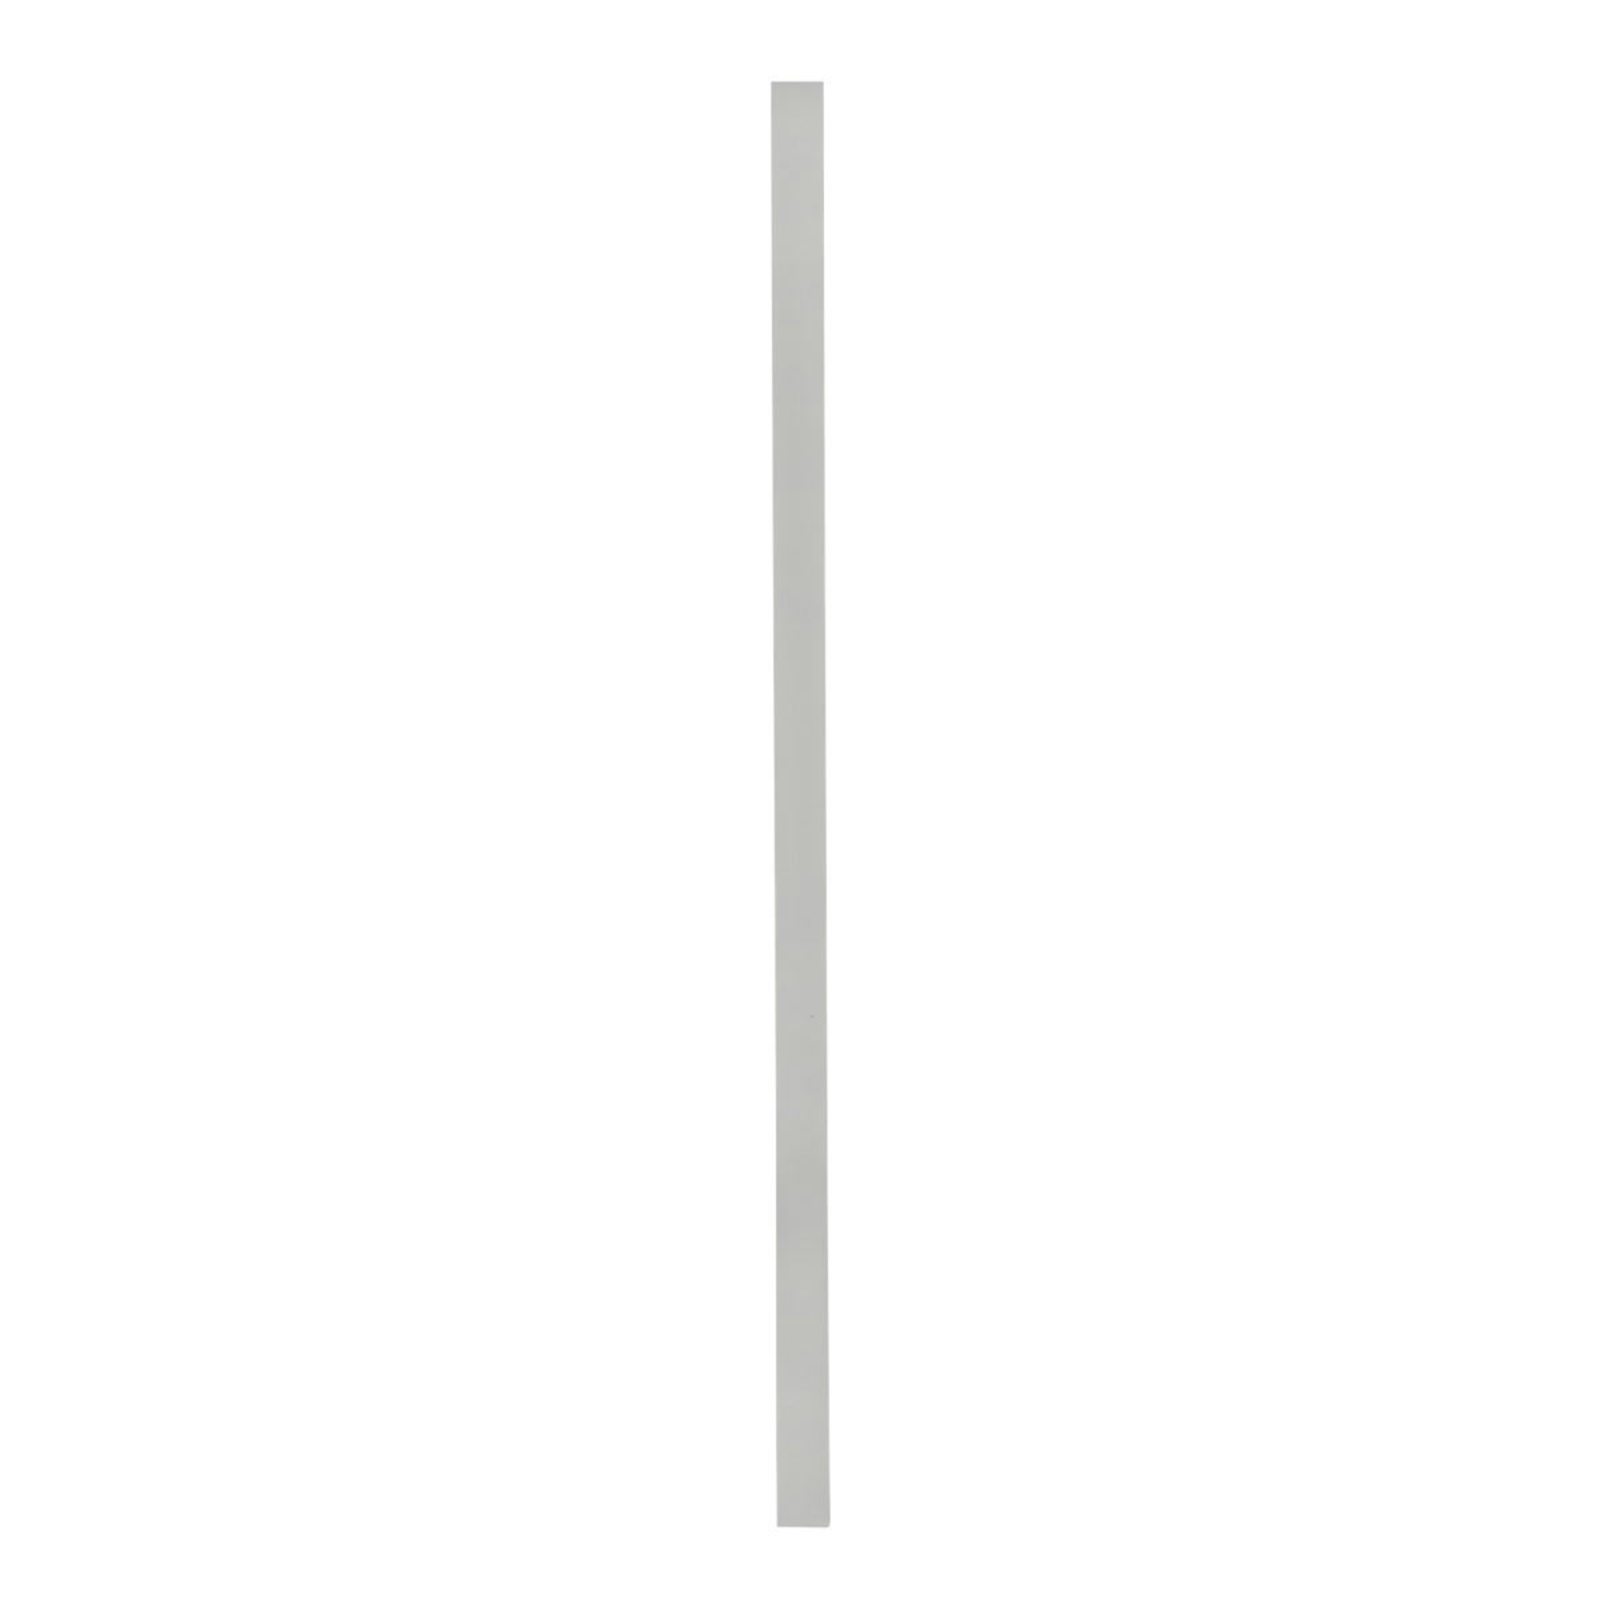 Xilema W1 - minimalist LED wall light, white